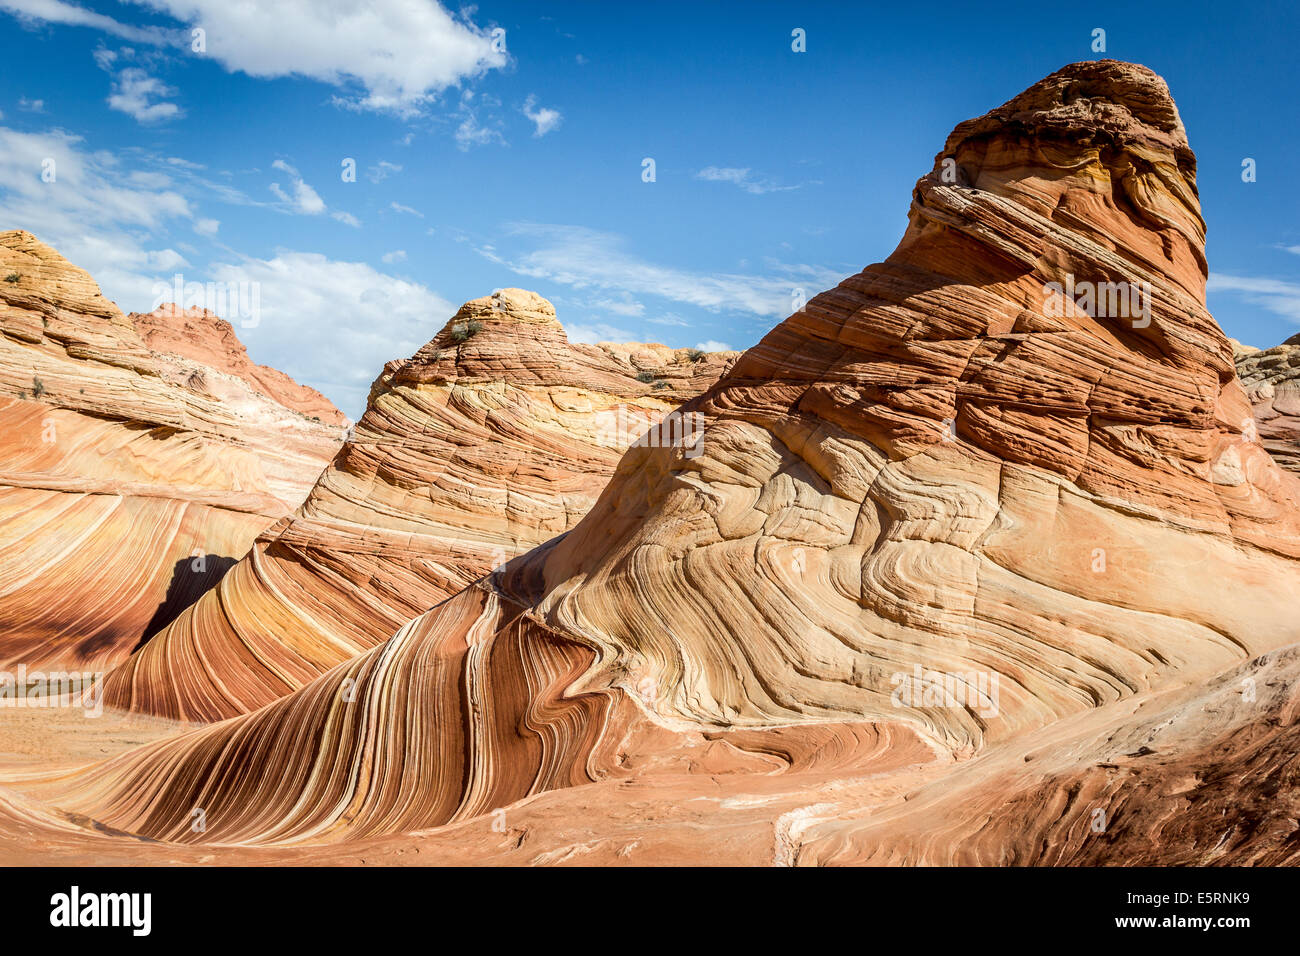 Die Welle, Arizona. Erstaunliche fließende Felsformation in der Steinwüste, Paria Canyon-Vermillion Cliffs Wilderness Stockfoto